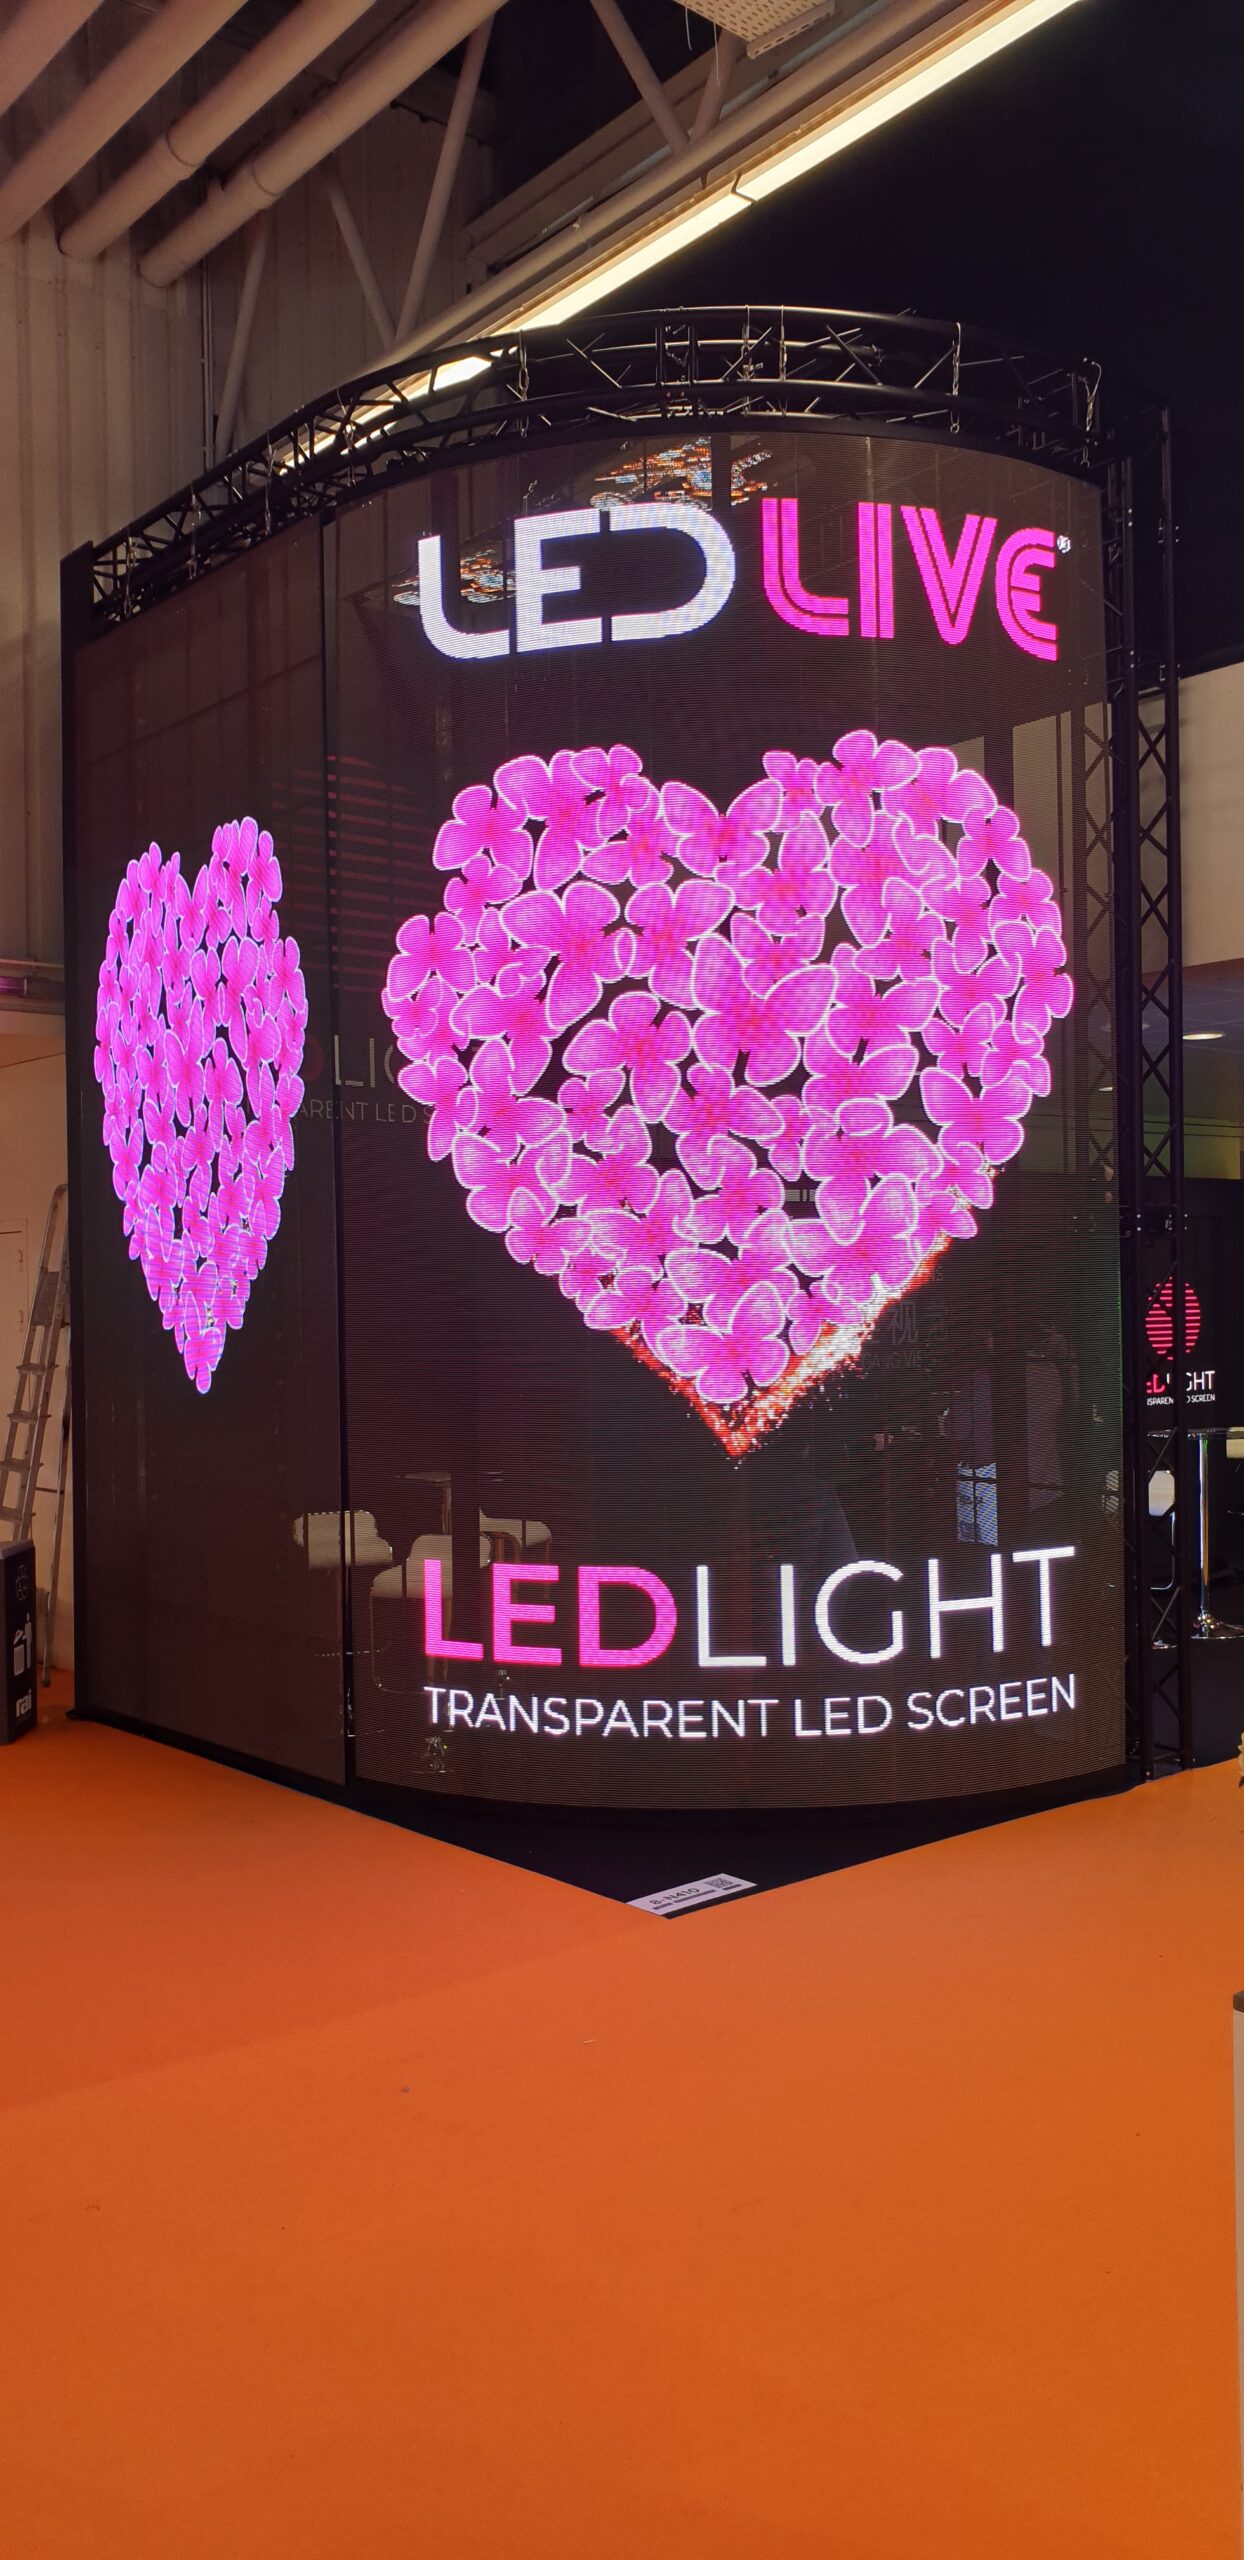 Logo firmy LedLIVE wyświetalające się wraz ze złożonym z różowych motyli sercu na wygiętym transparentnym ekranie led